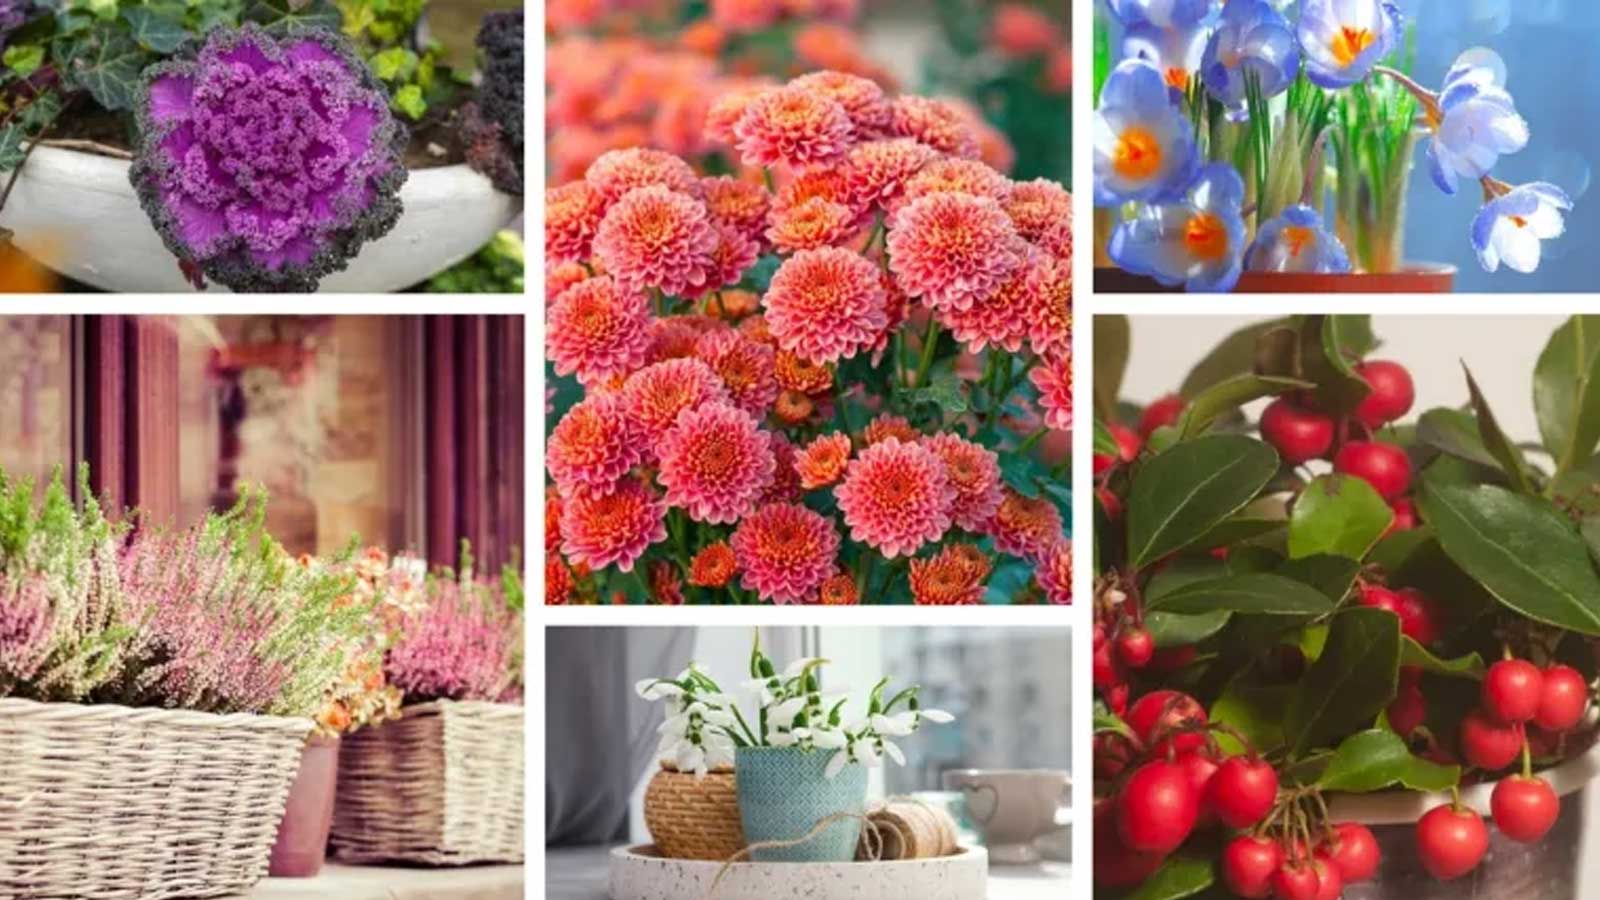 Είστε παθιασμένοι με τα λουλούδια; Στη συνέχεια, θα πρέπει να εξετάσετε τη διακόσμηση του σπιτιού σας και για το το χειμώνα με όμορφα φυτά.